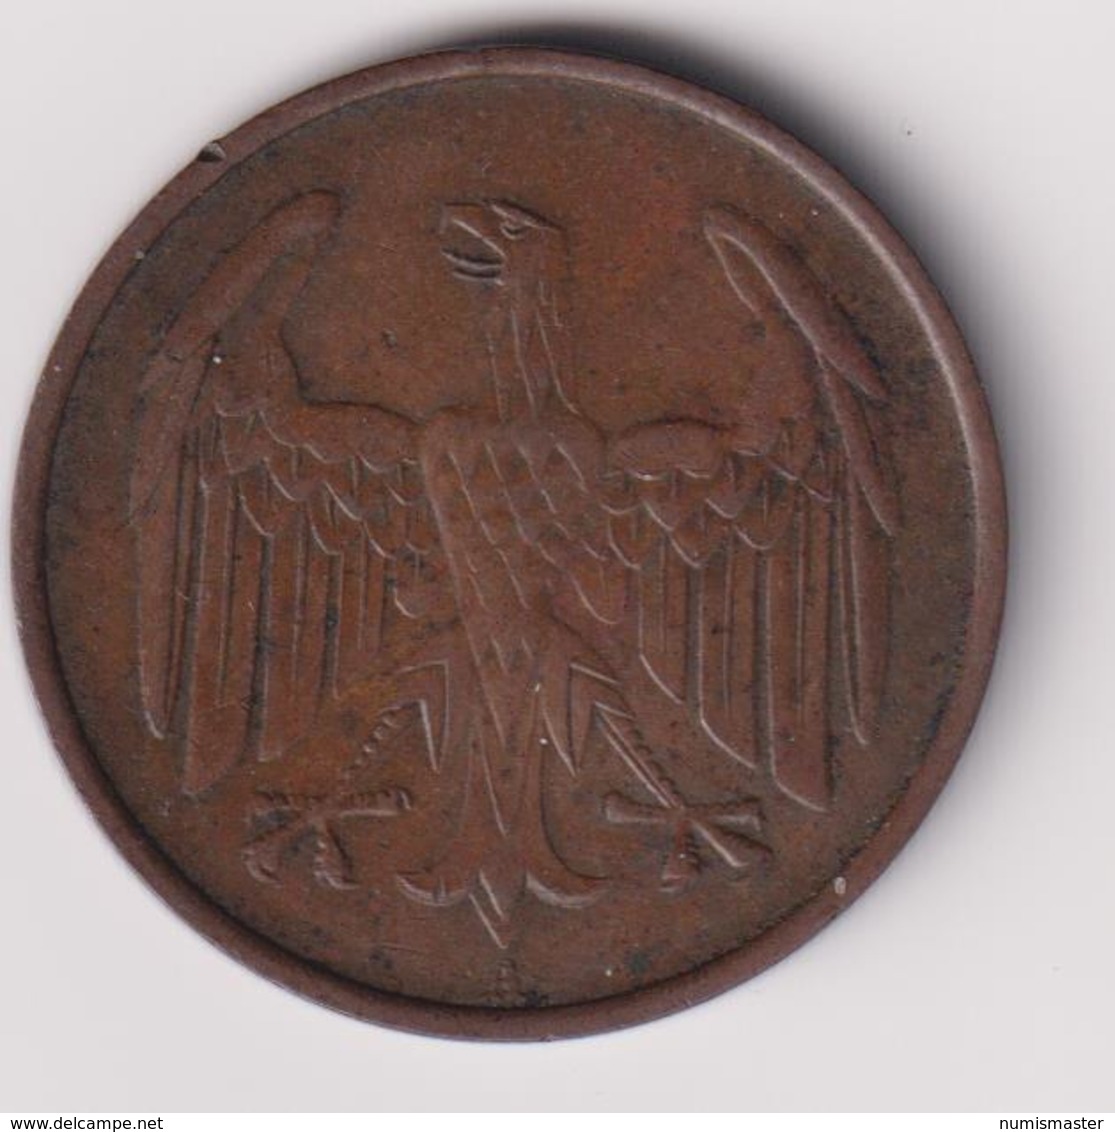 GERMANY , 4 REICHSPFENNIG 1932 A - 4 Reichspfennig